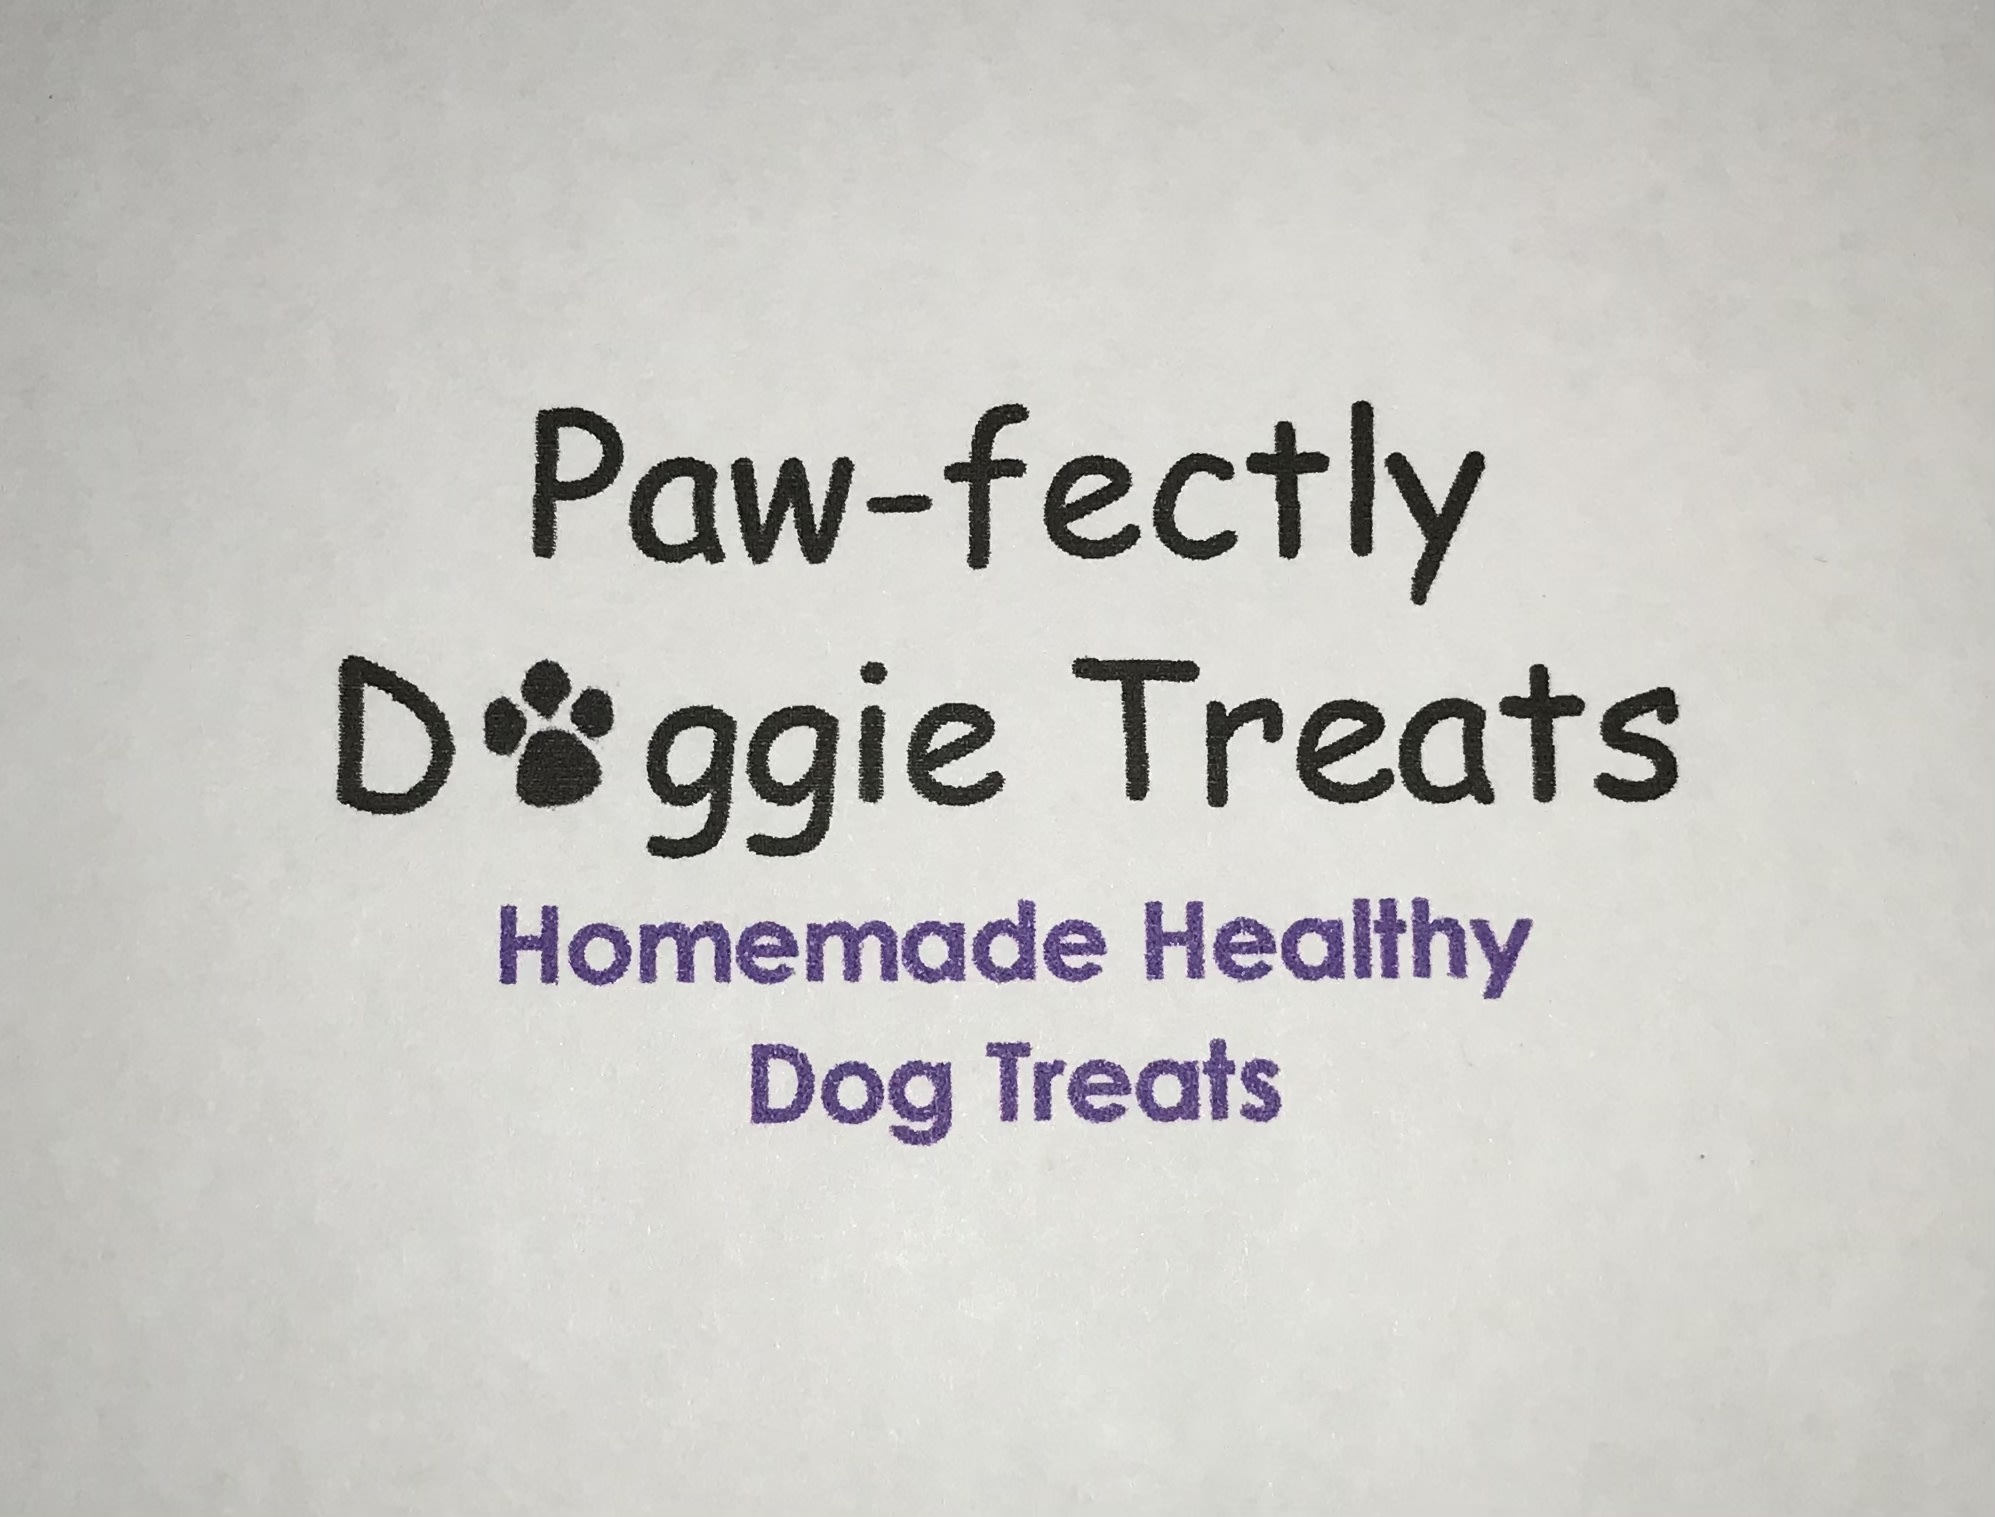 Paw-fectly Doggie Treats